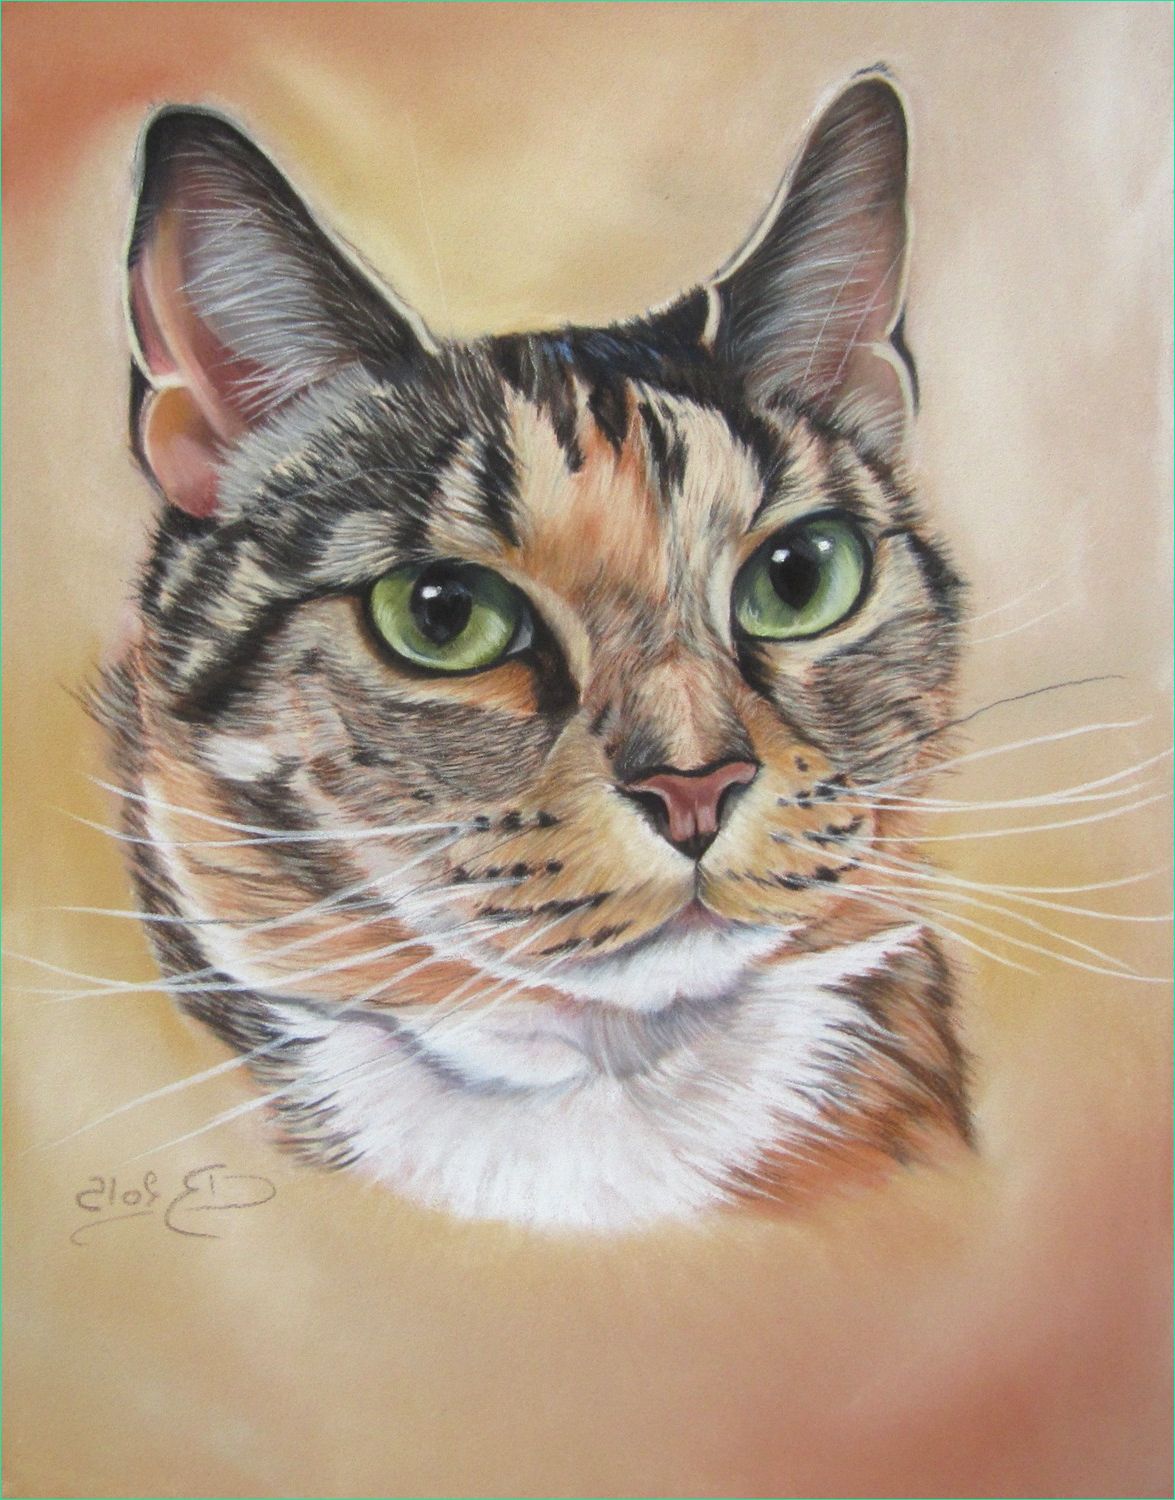 dessin et peinture video 1572 portrait de chat au pastels secs